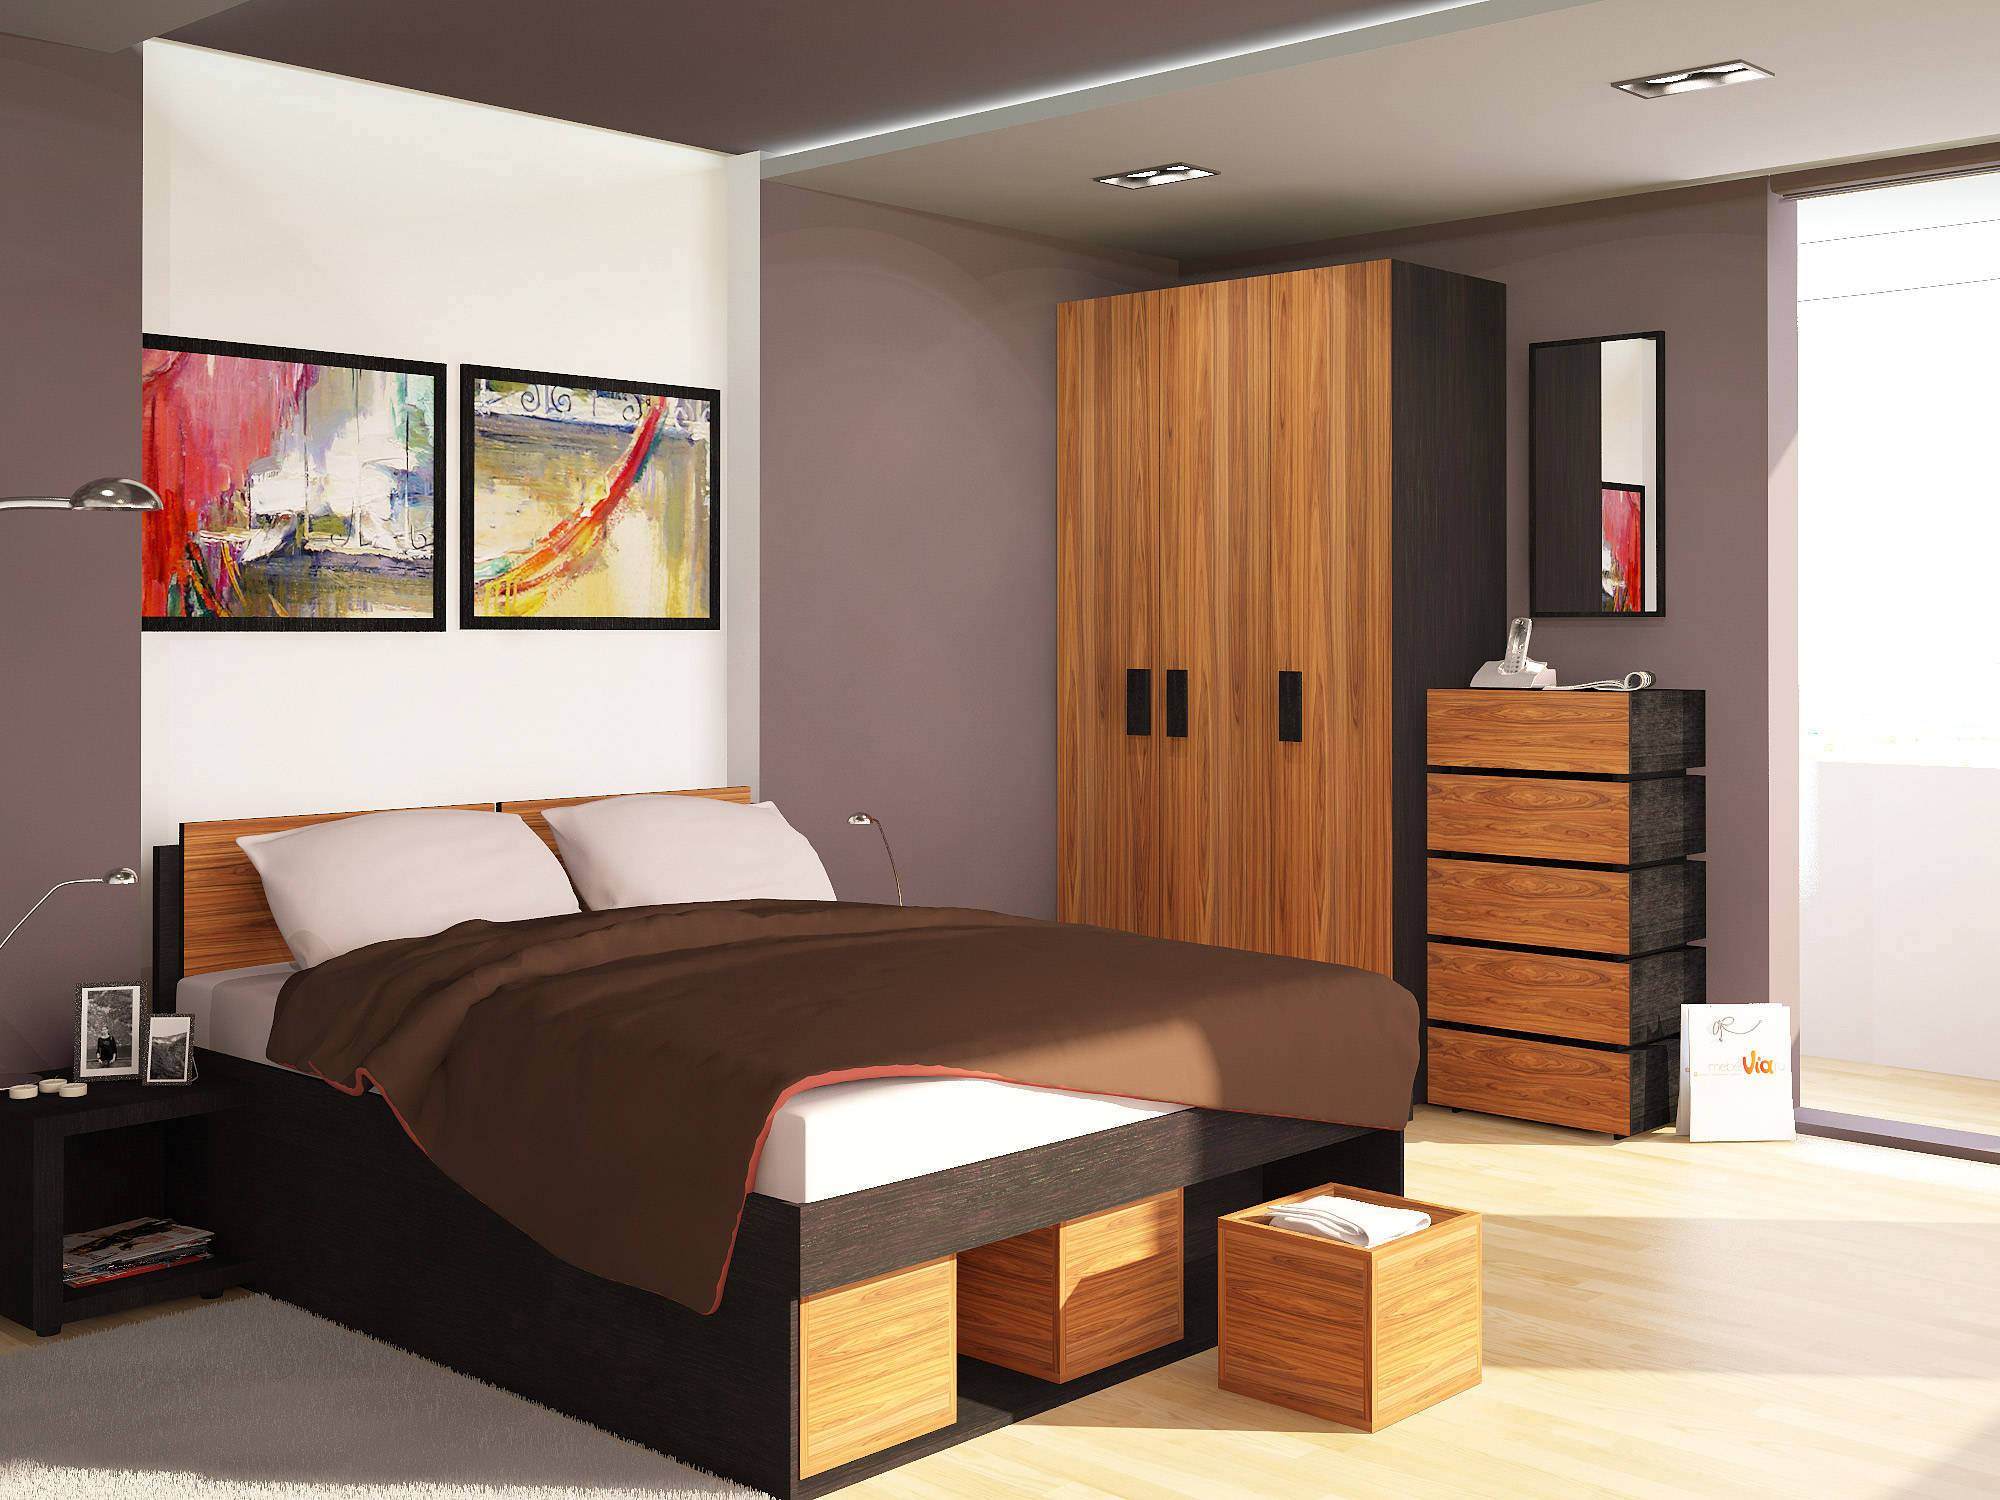 Гарнитуры спален: недорогие с фото, дизайн мебели, двух спальный для маленькой комнаты, стильные модули